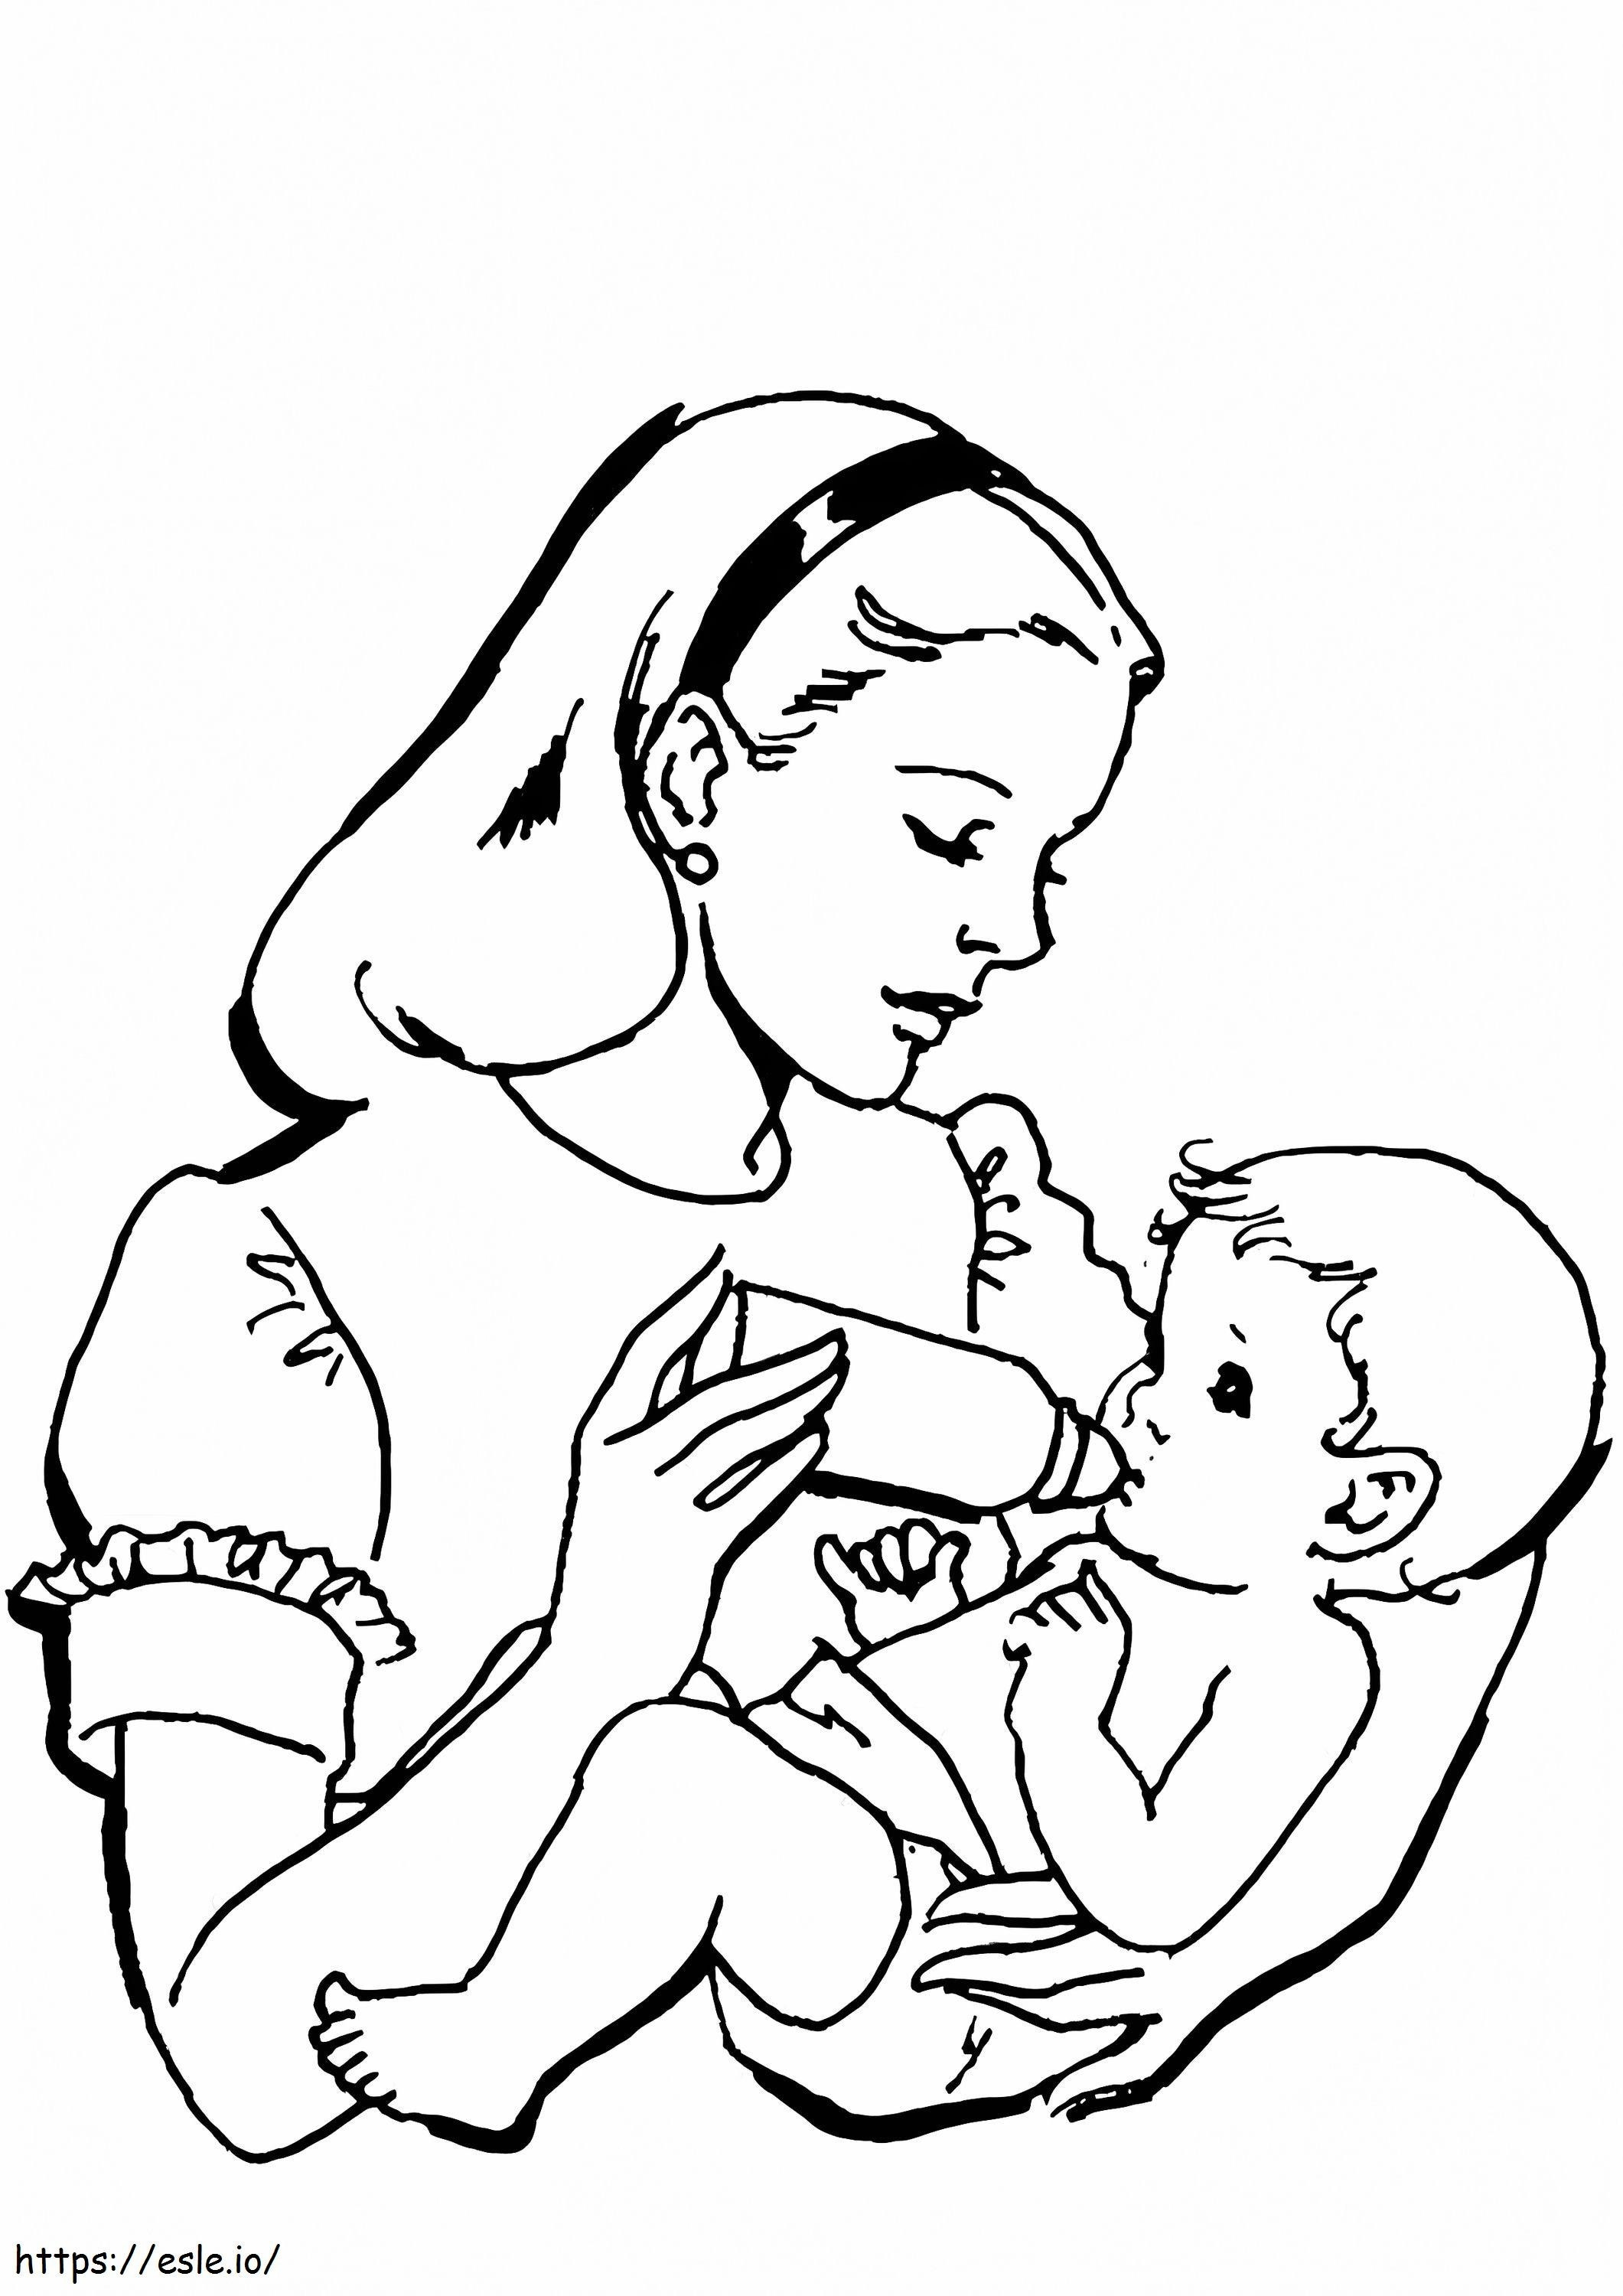 De moeder geeft melk aan de baby kleurplaat kleurplaat